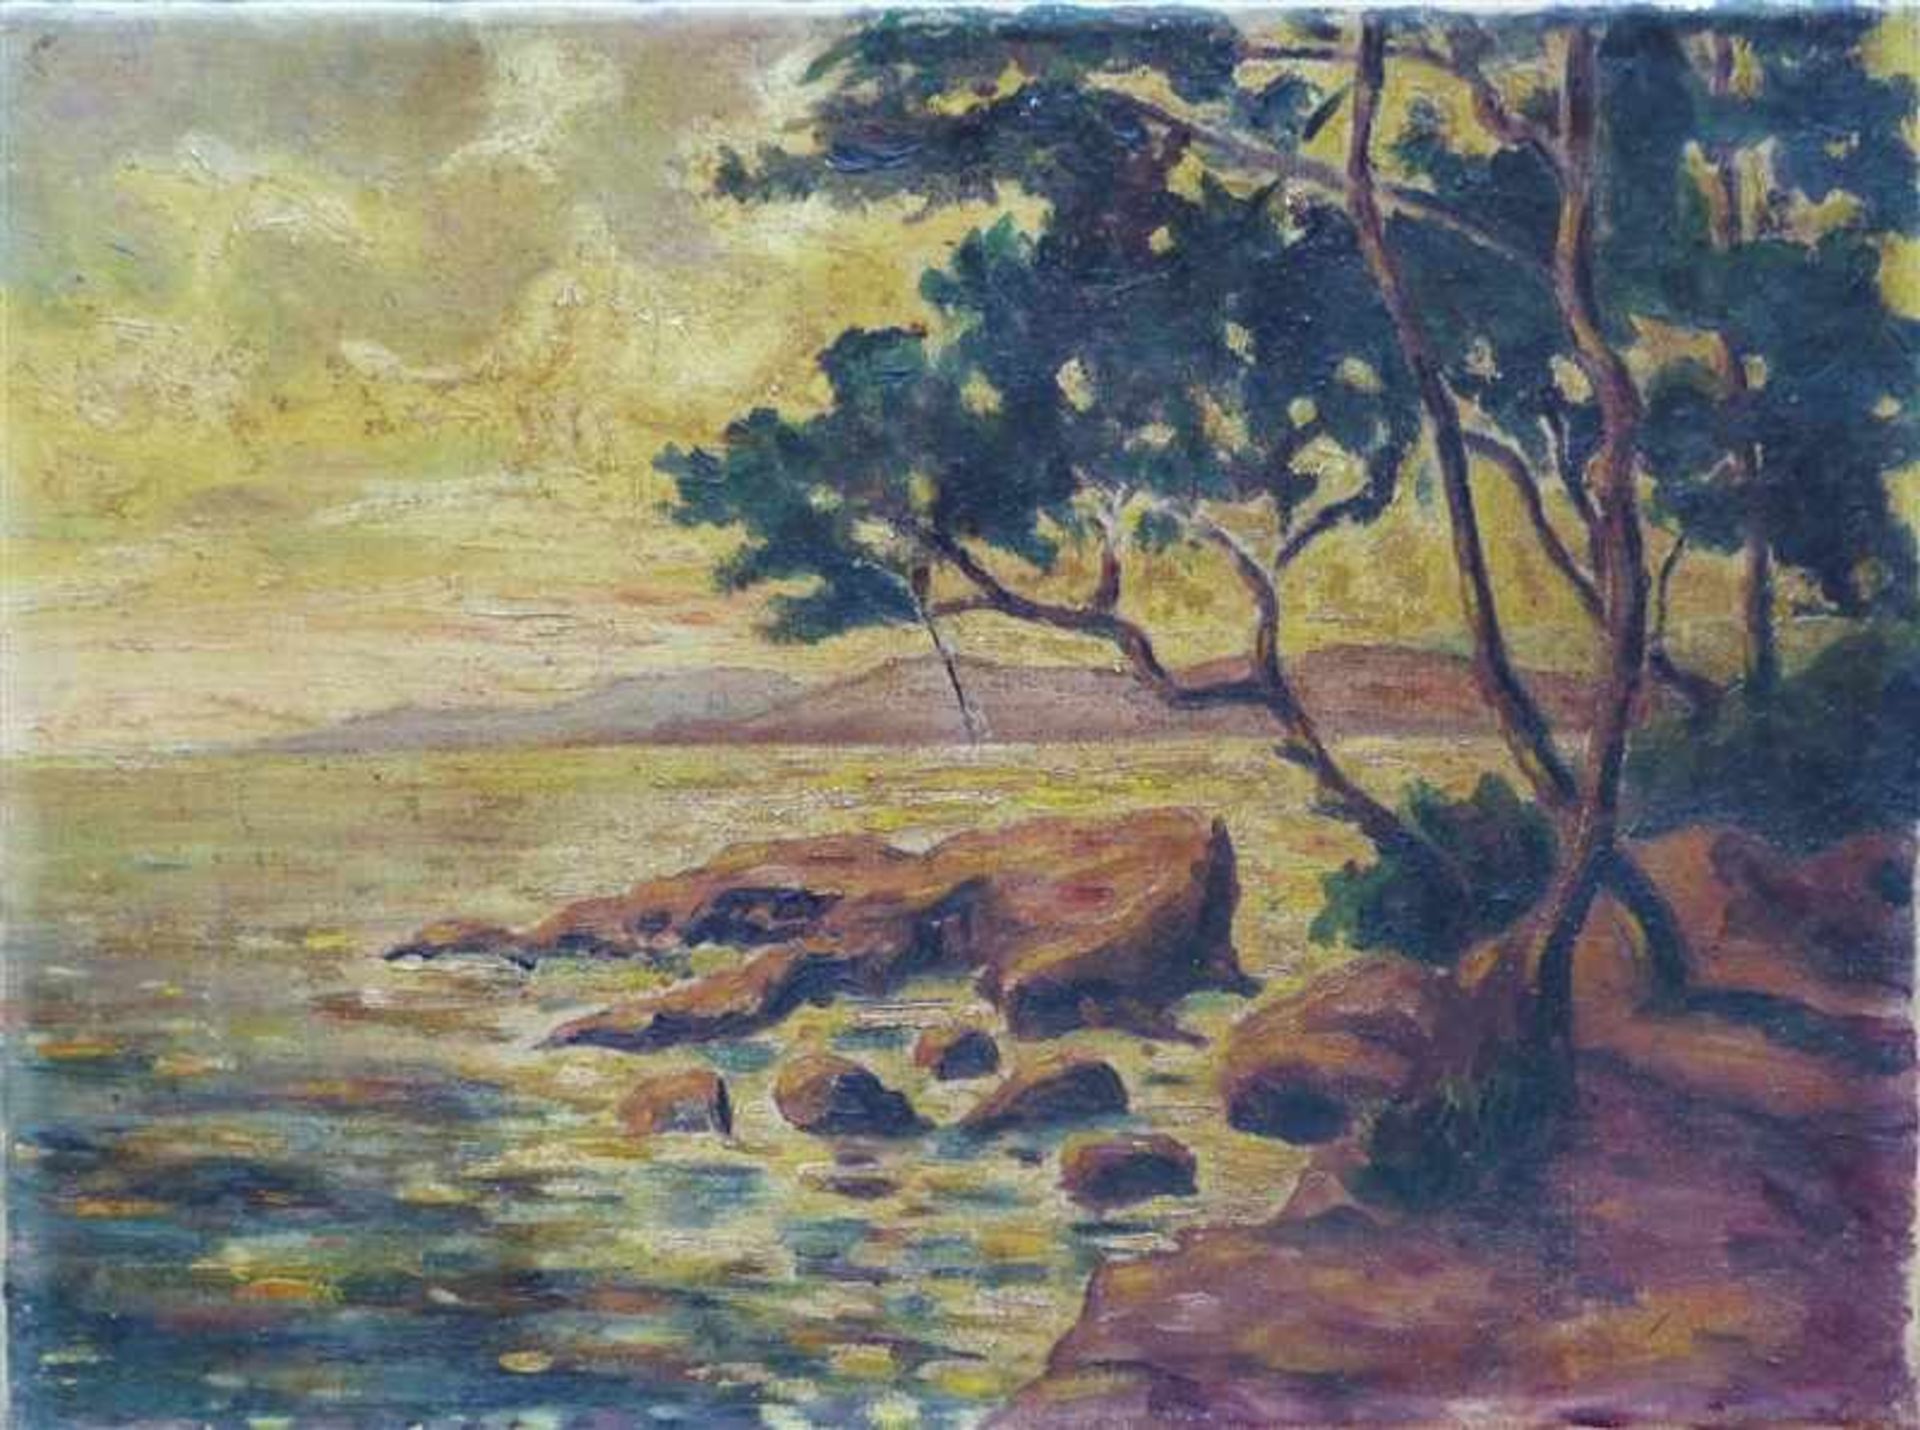 Unbekannt, um 1900 Öl auf Leinen, italienische Uferlandschaft mit Bäumen, beschädigt, 46x60 cm,